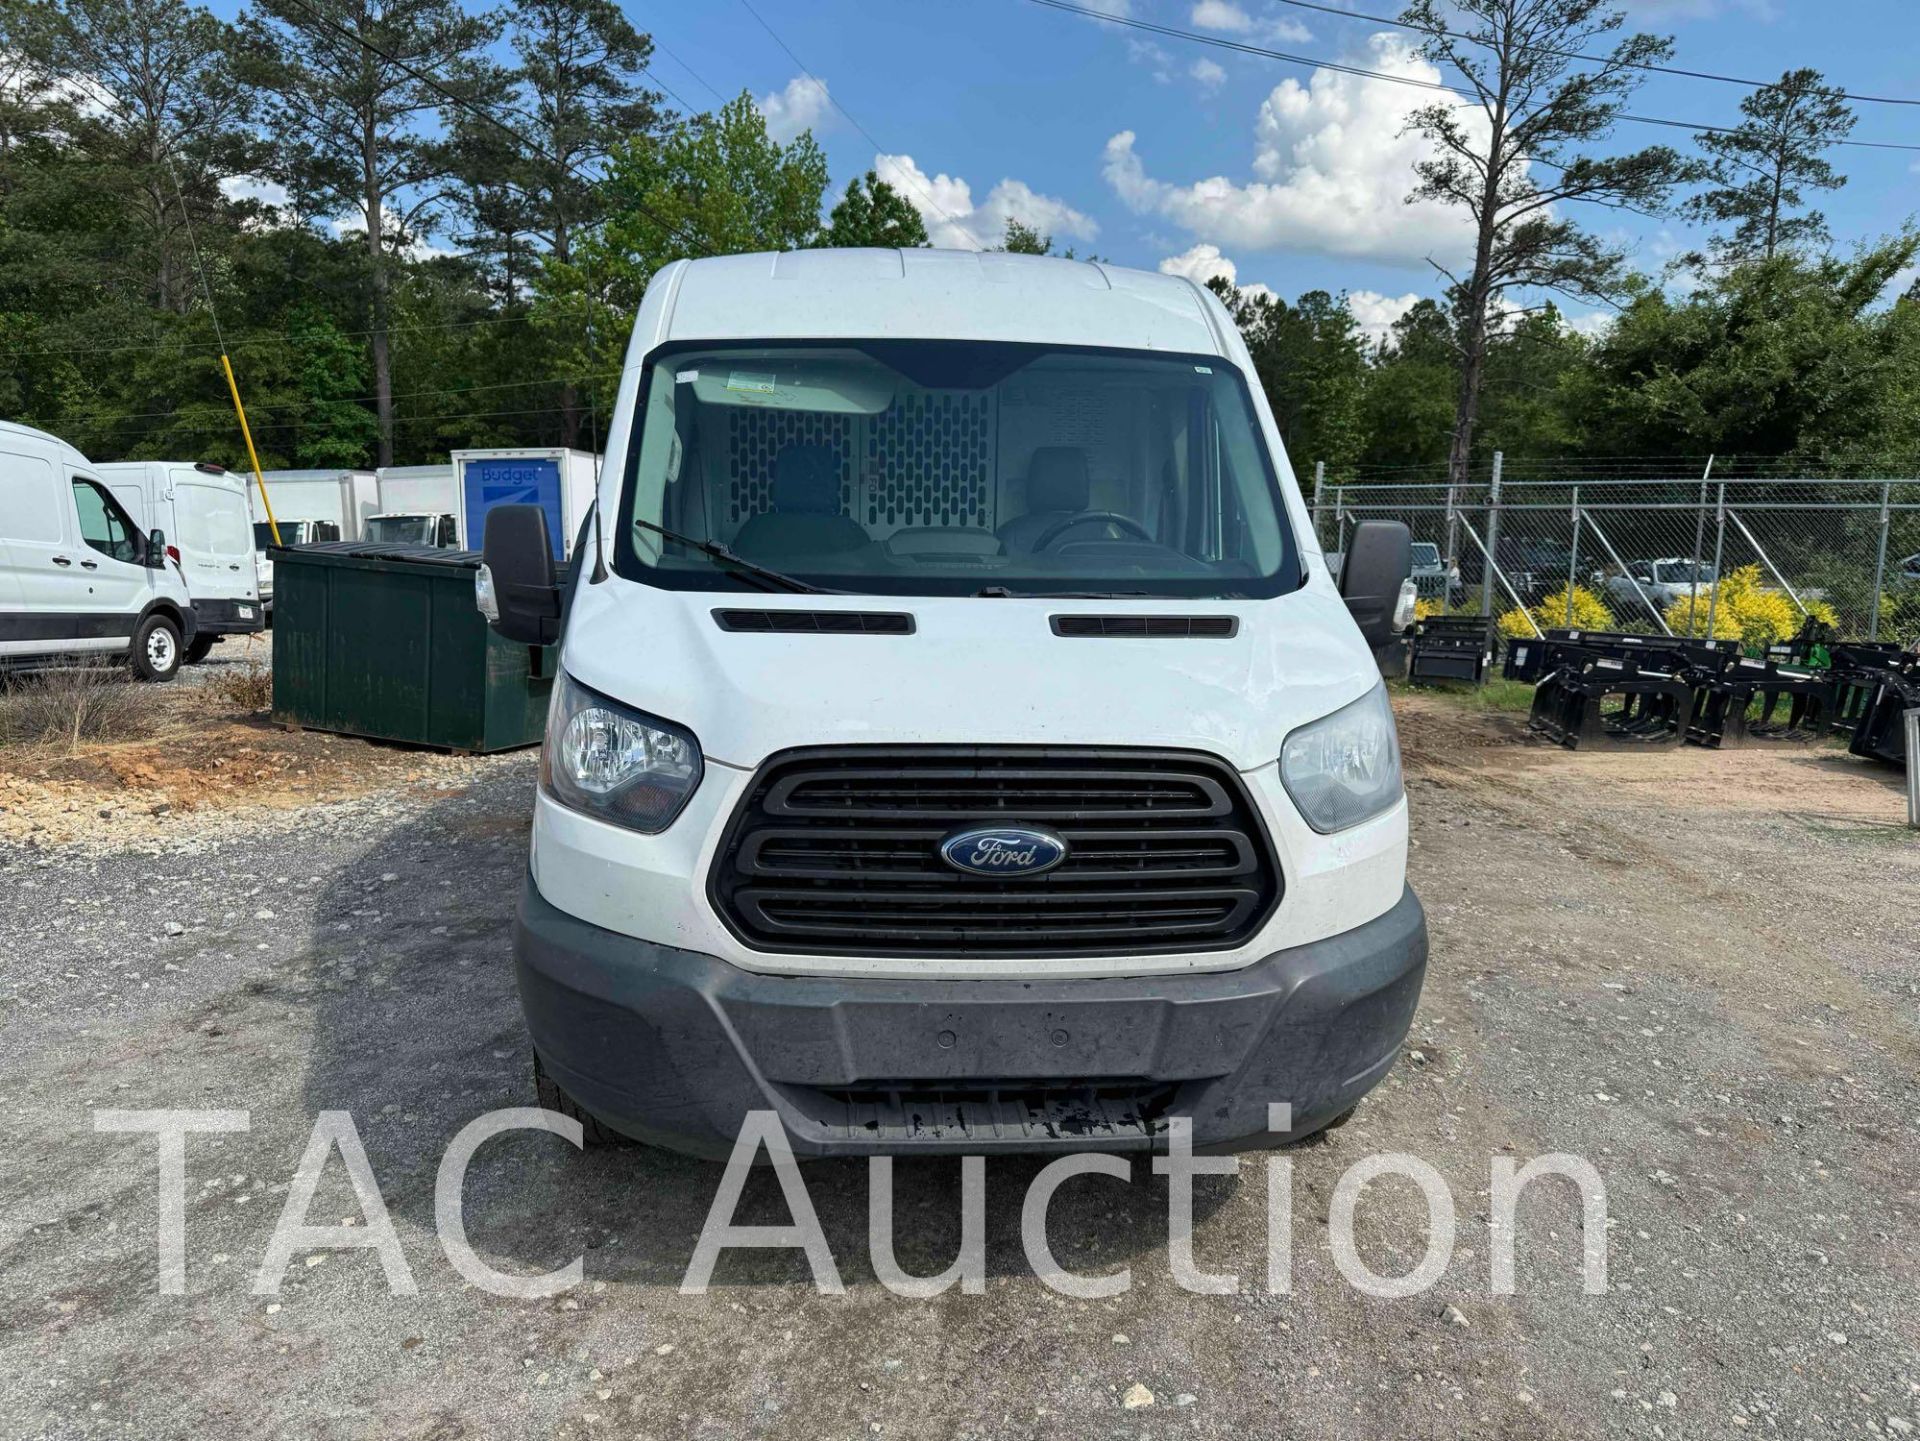 2019 Ford Transit 150 Cargo Van - Image 2 of 43